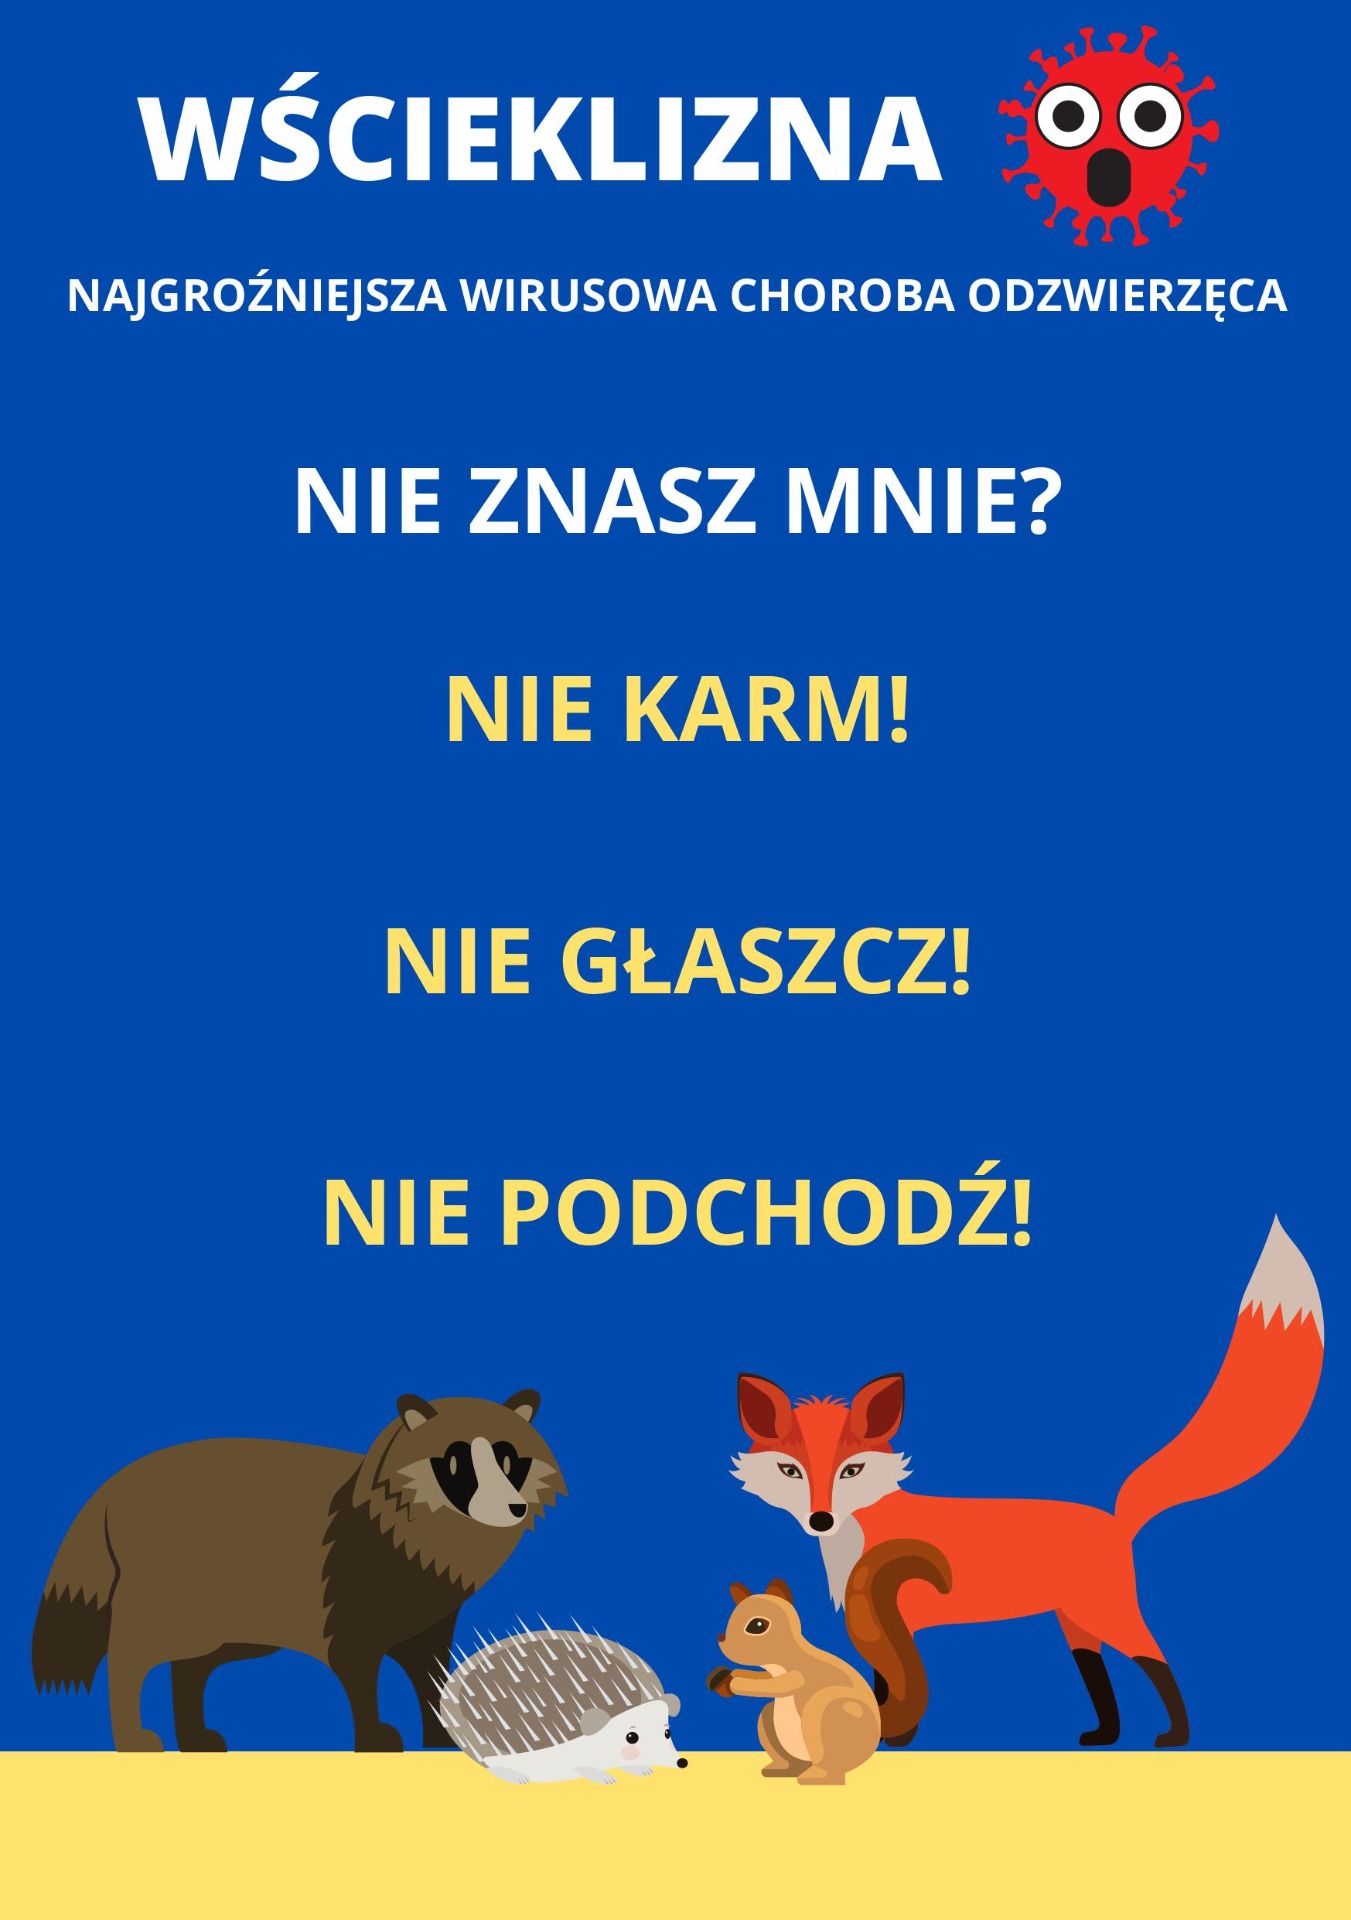 Wścieklizna wśród zwierząt w województwie mazowieckim 2021 - Obrazek 2